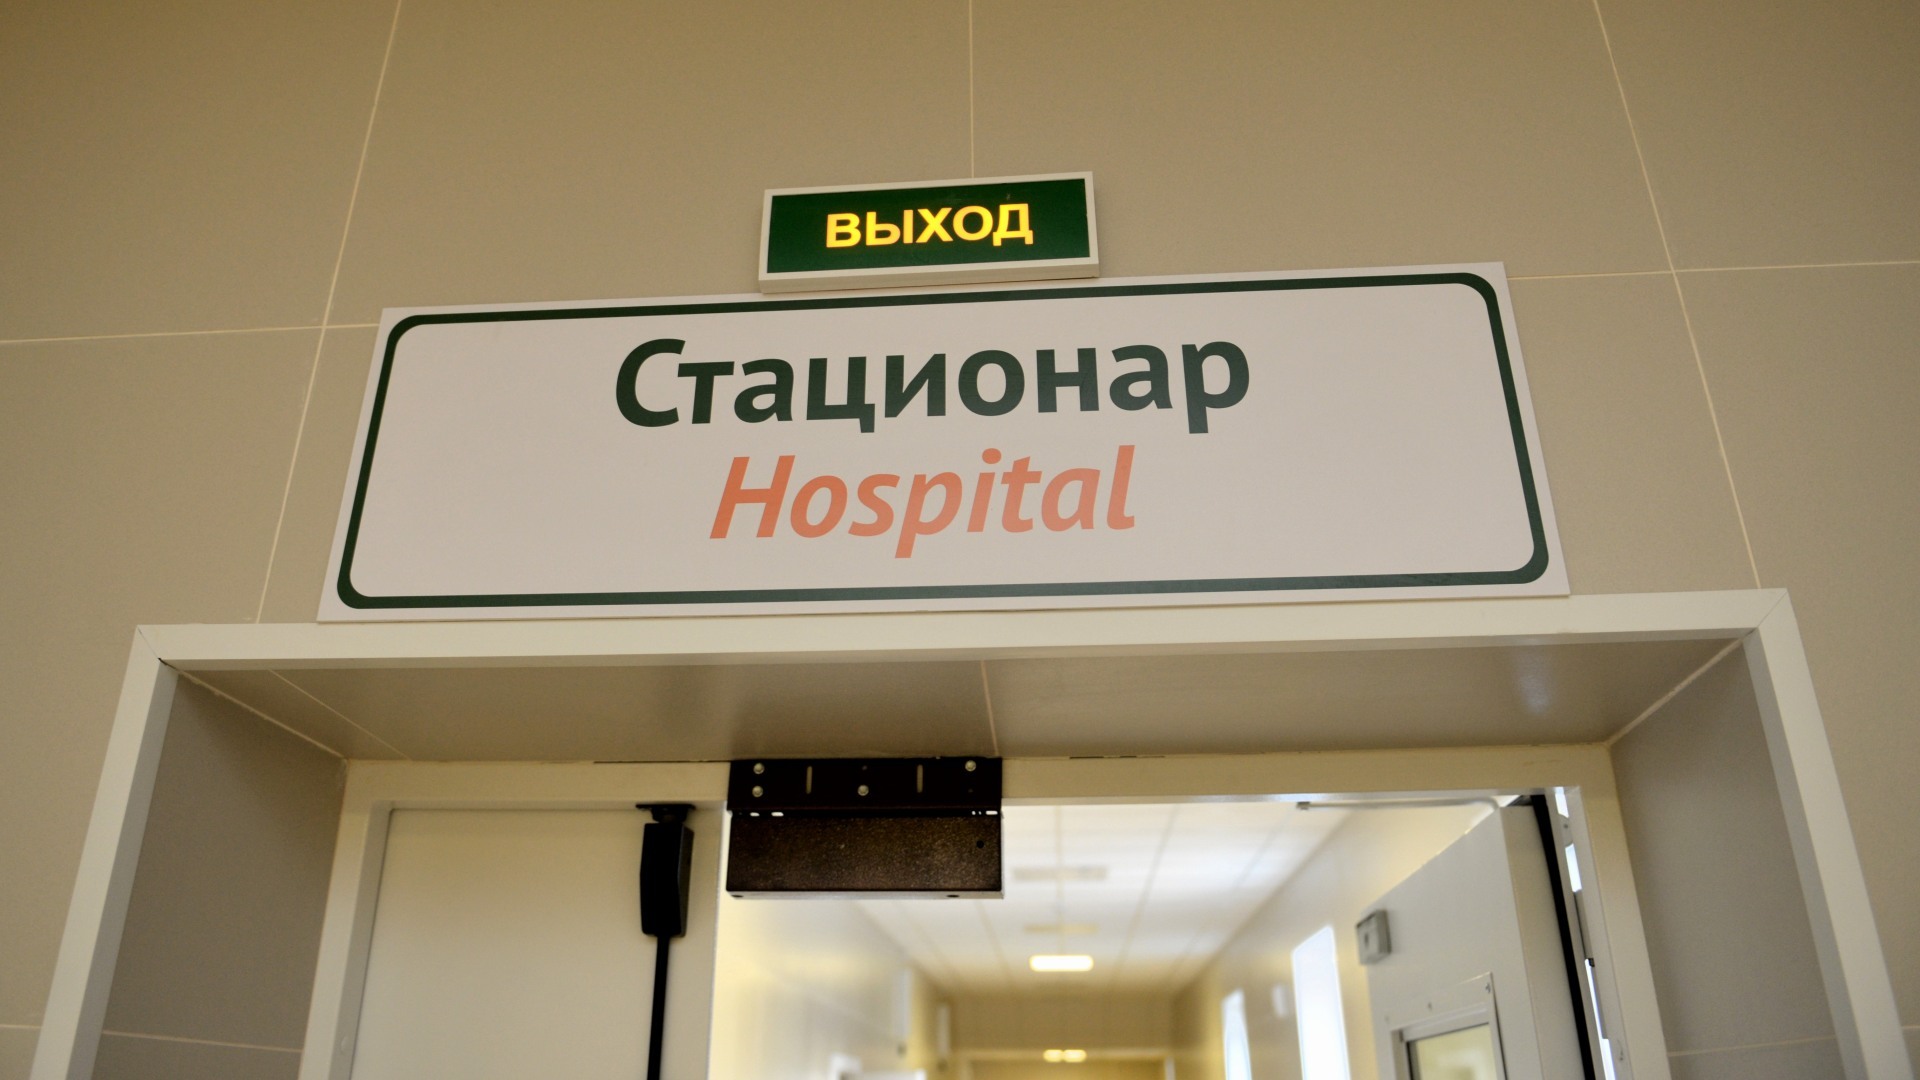 Статистика по коронавирусу в Оренбуржье на 13 апреля: уже 88 заболевших